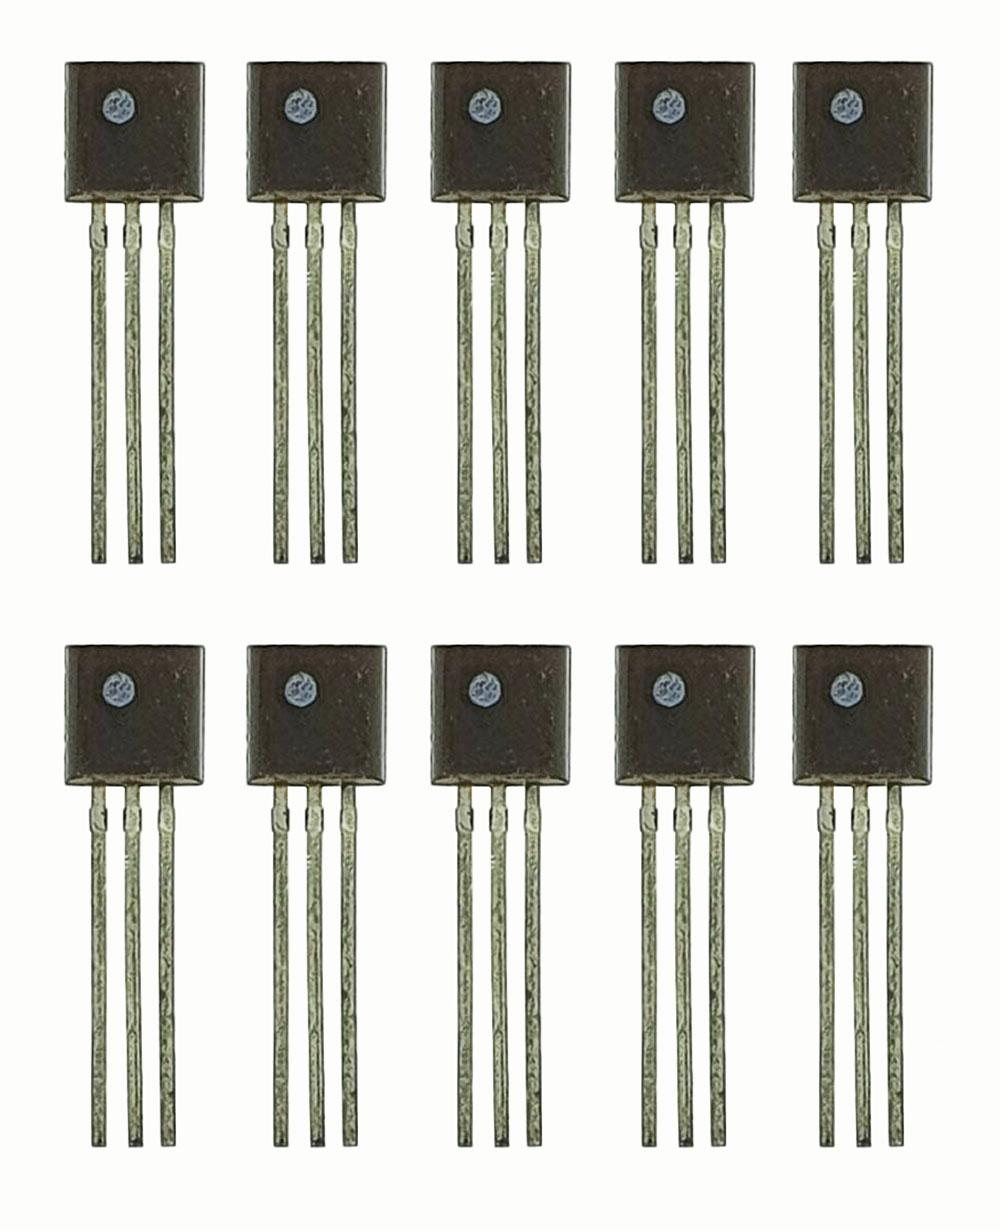 Транзистор КТ645А, 10 штук / Аналоги: 2Т645А, 2N4400, 2N5845, 2SC1317, 2SC1846 / n-p-n